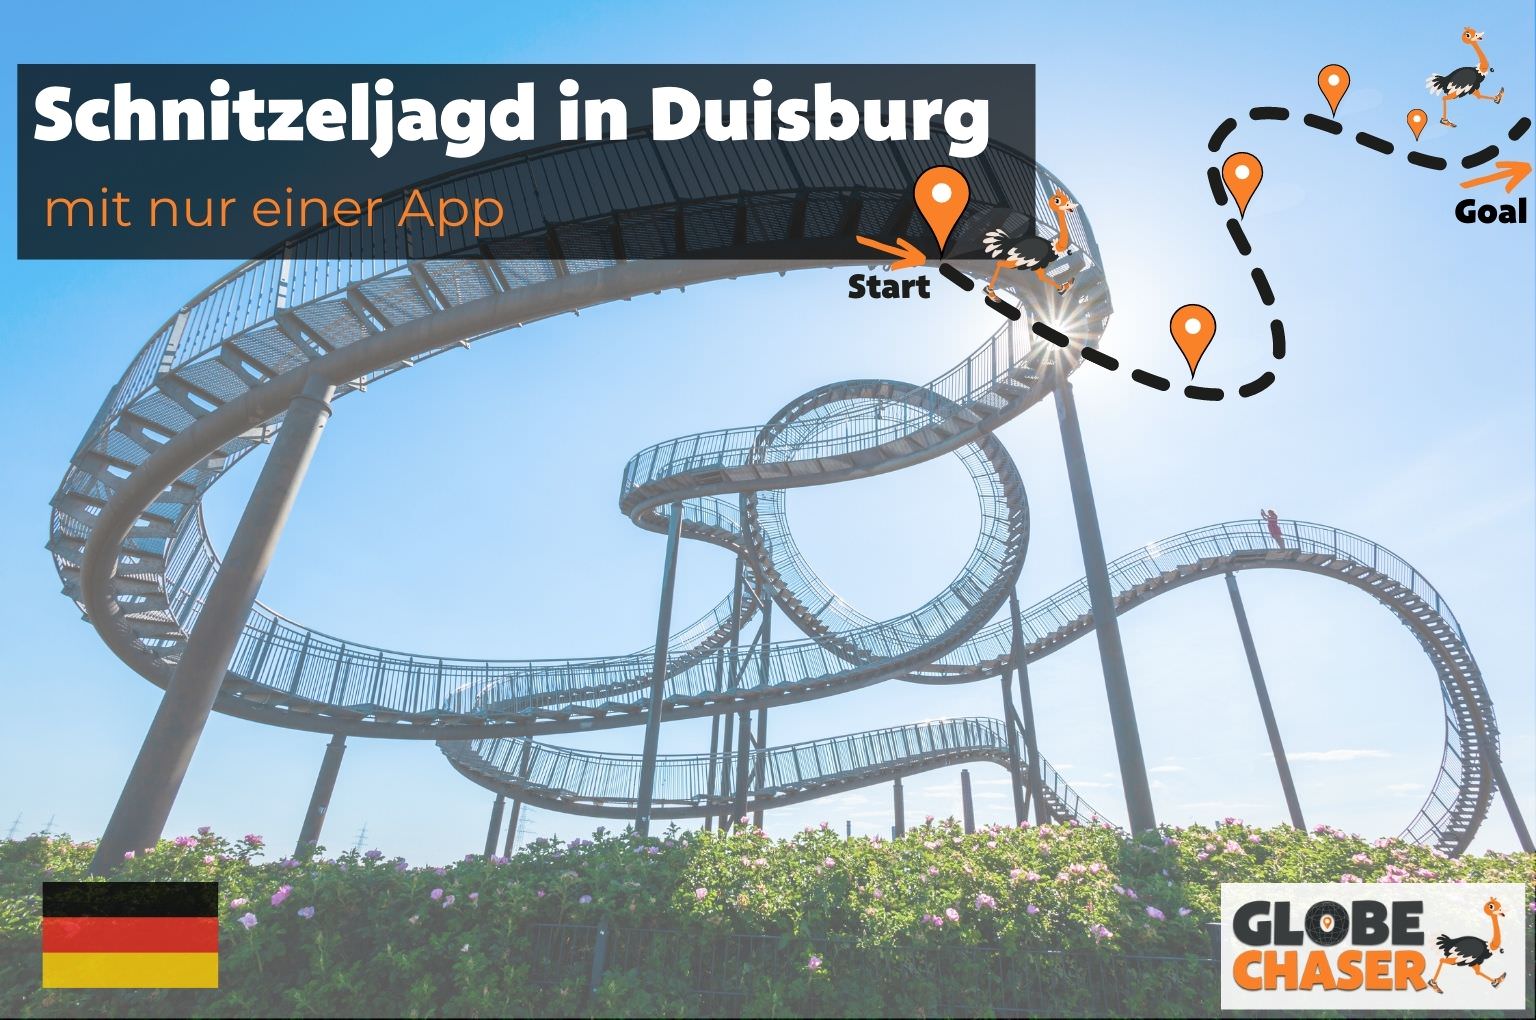 Schnitzeljagd in Duisburg mit App - Globe Chaser Erlebnisse Deutschland